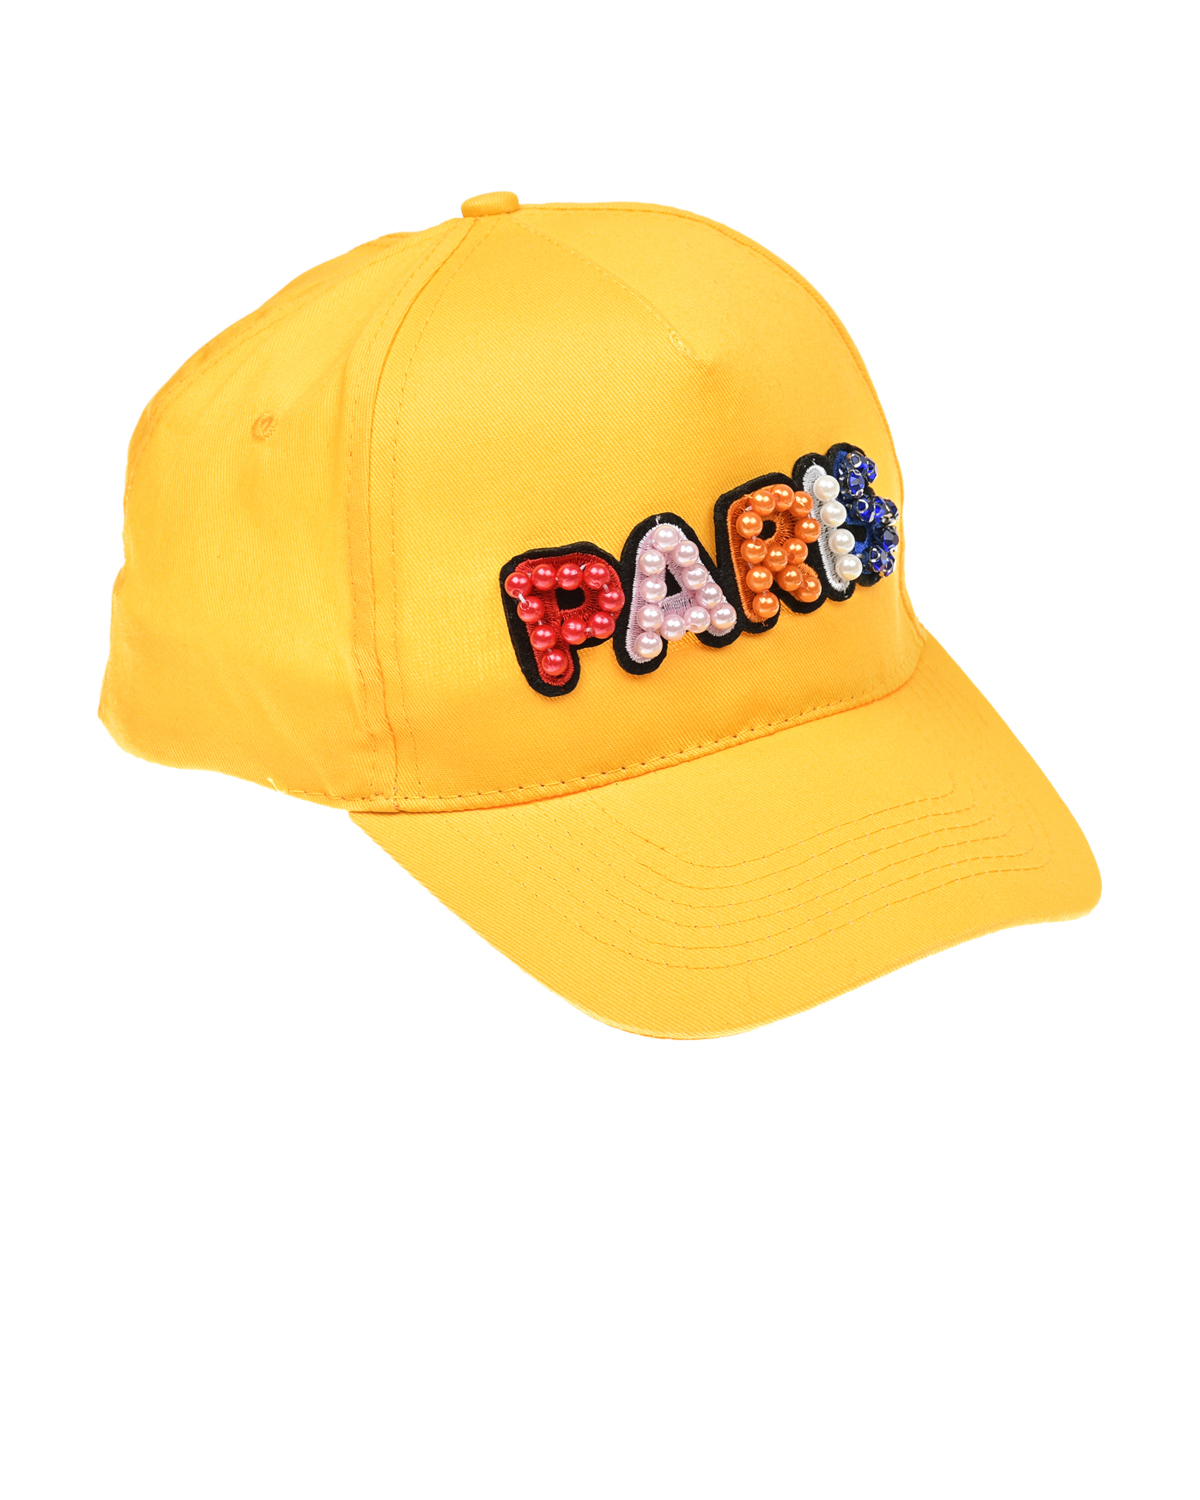 Желтая шапка с надписью "PARIS" из бусин Regina, размер 56, цвет желтый